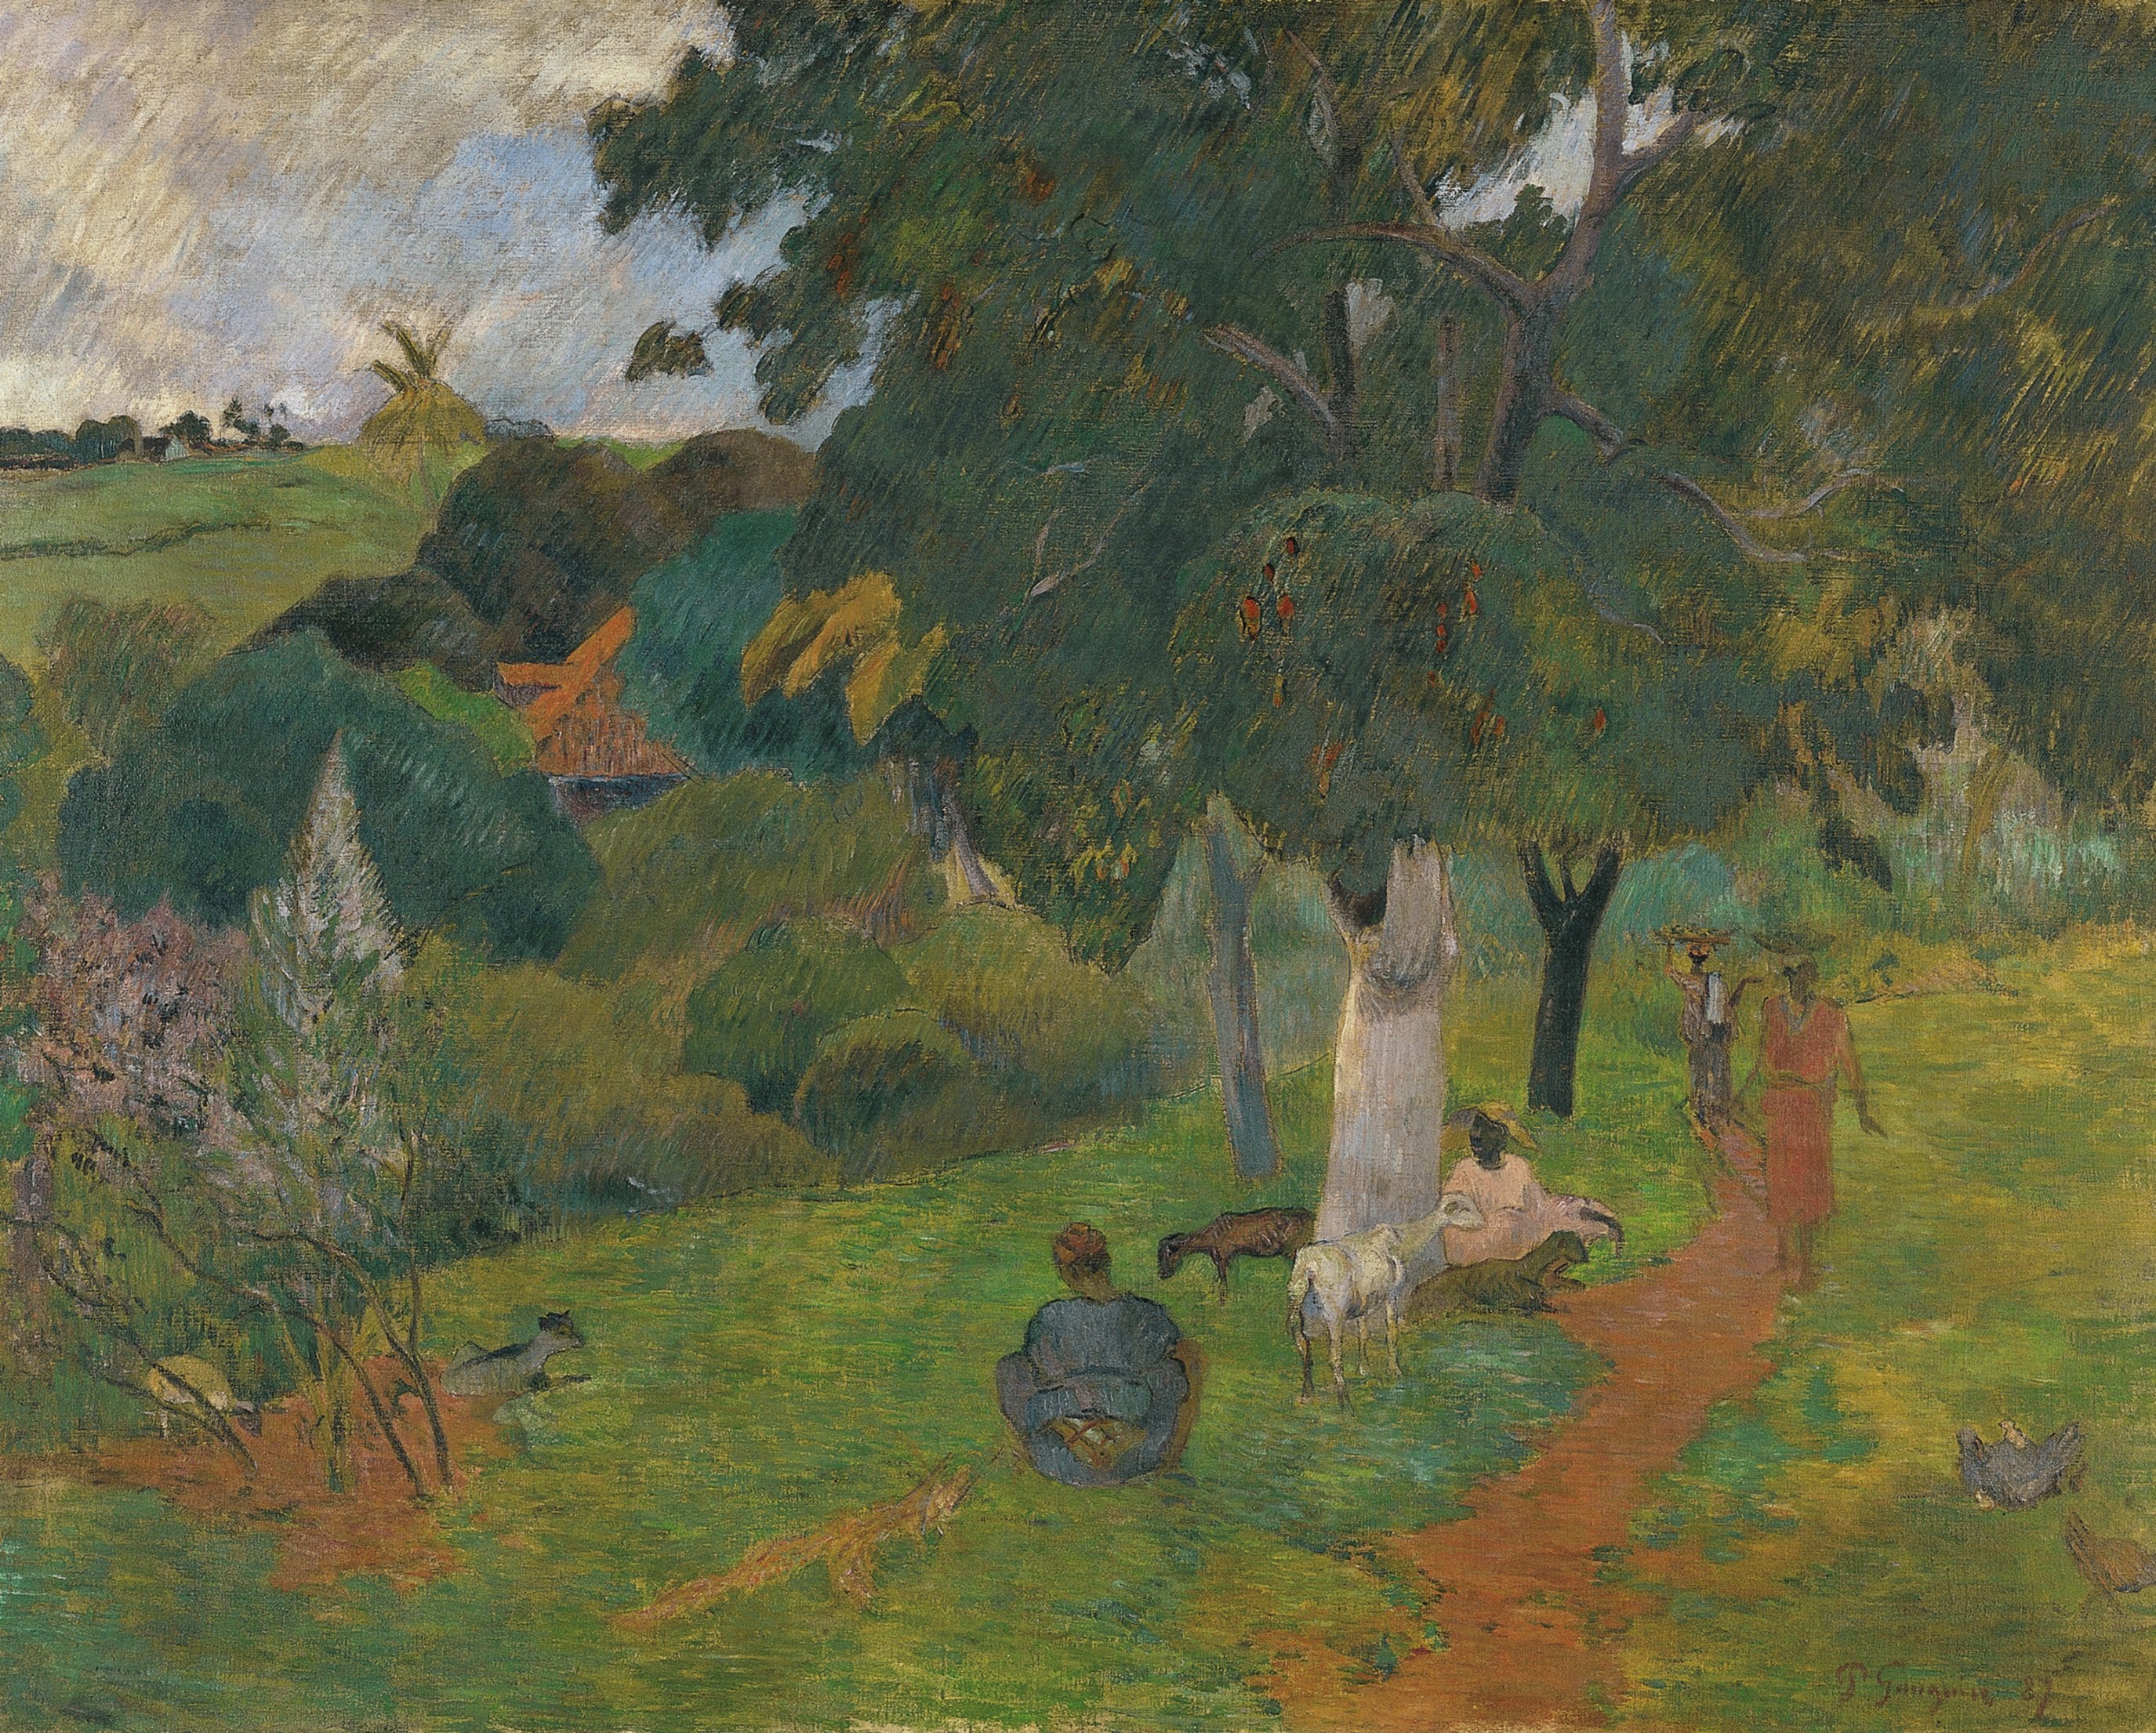 'Idas y venidas' (1887), de Gauguin. Valorado en 40 millones de dólares